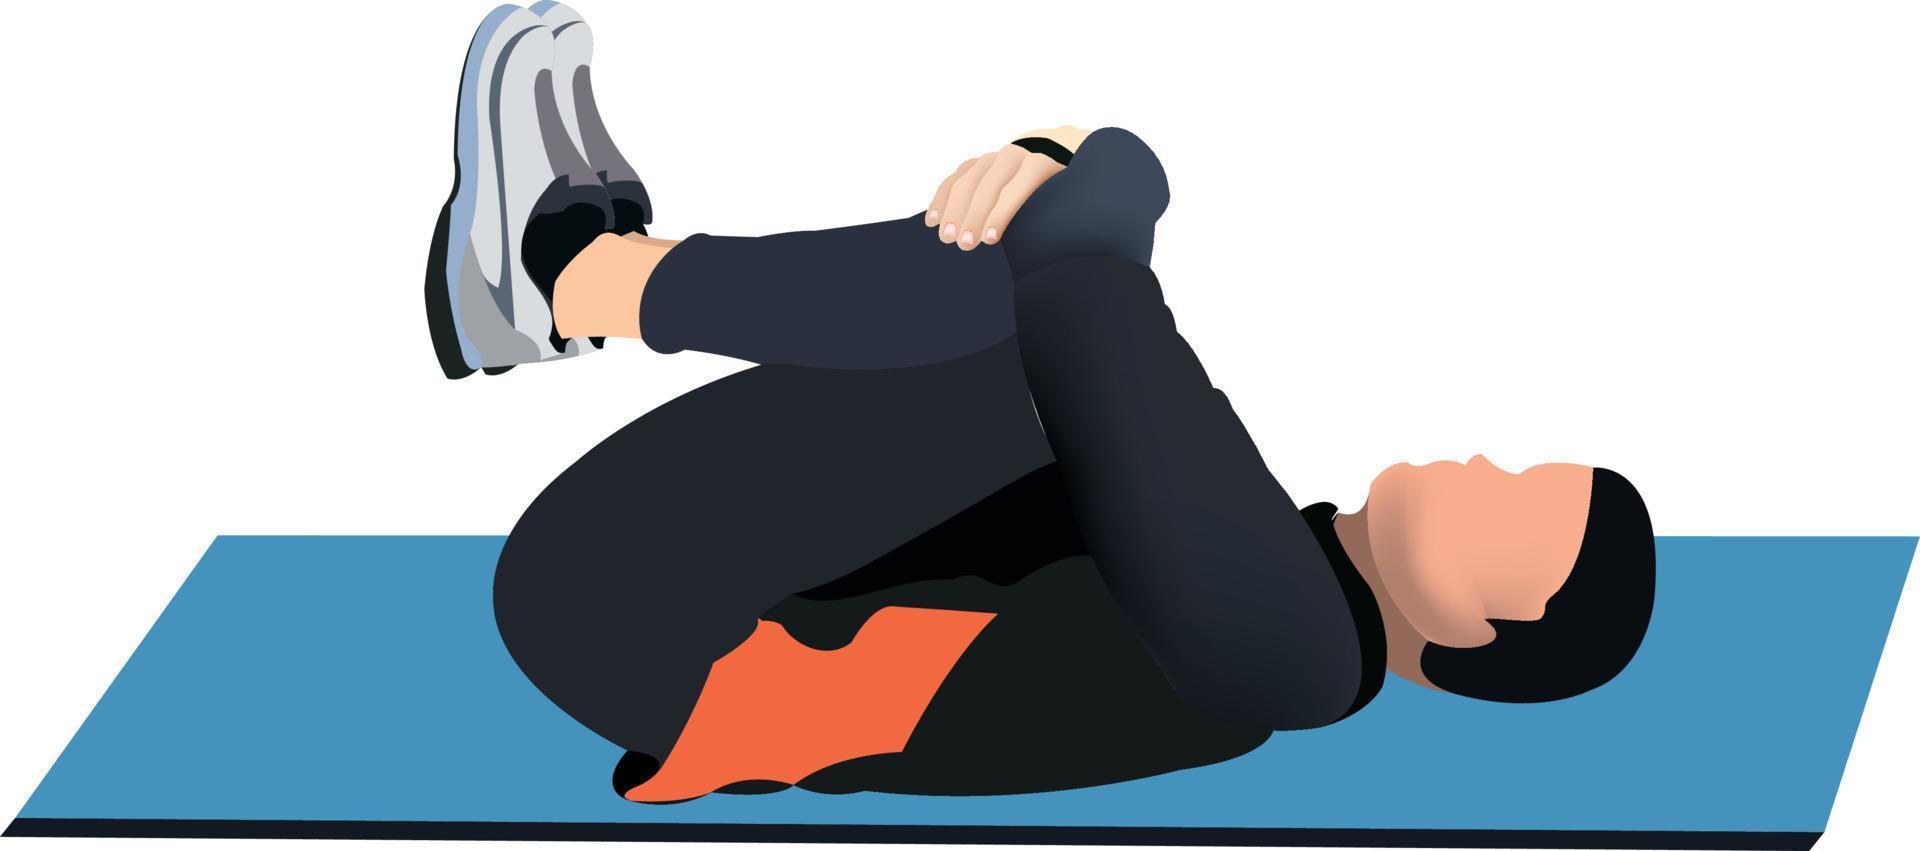 exercice de gymnastique posturale. l'illustration montre un homme sur un tapis effectuant un exercice d'étirement. vecteur